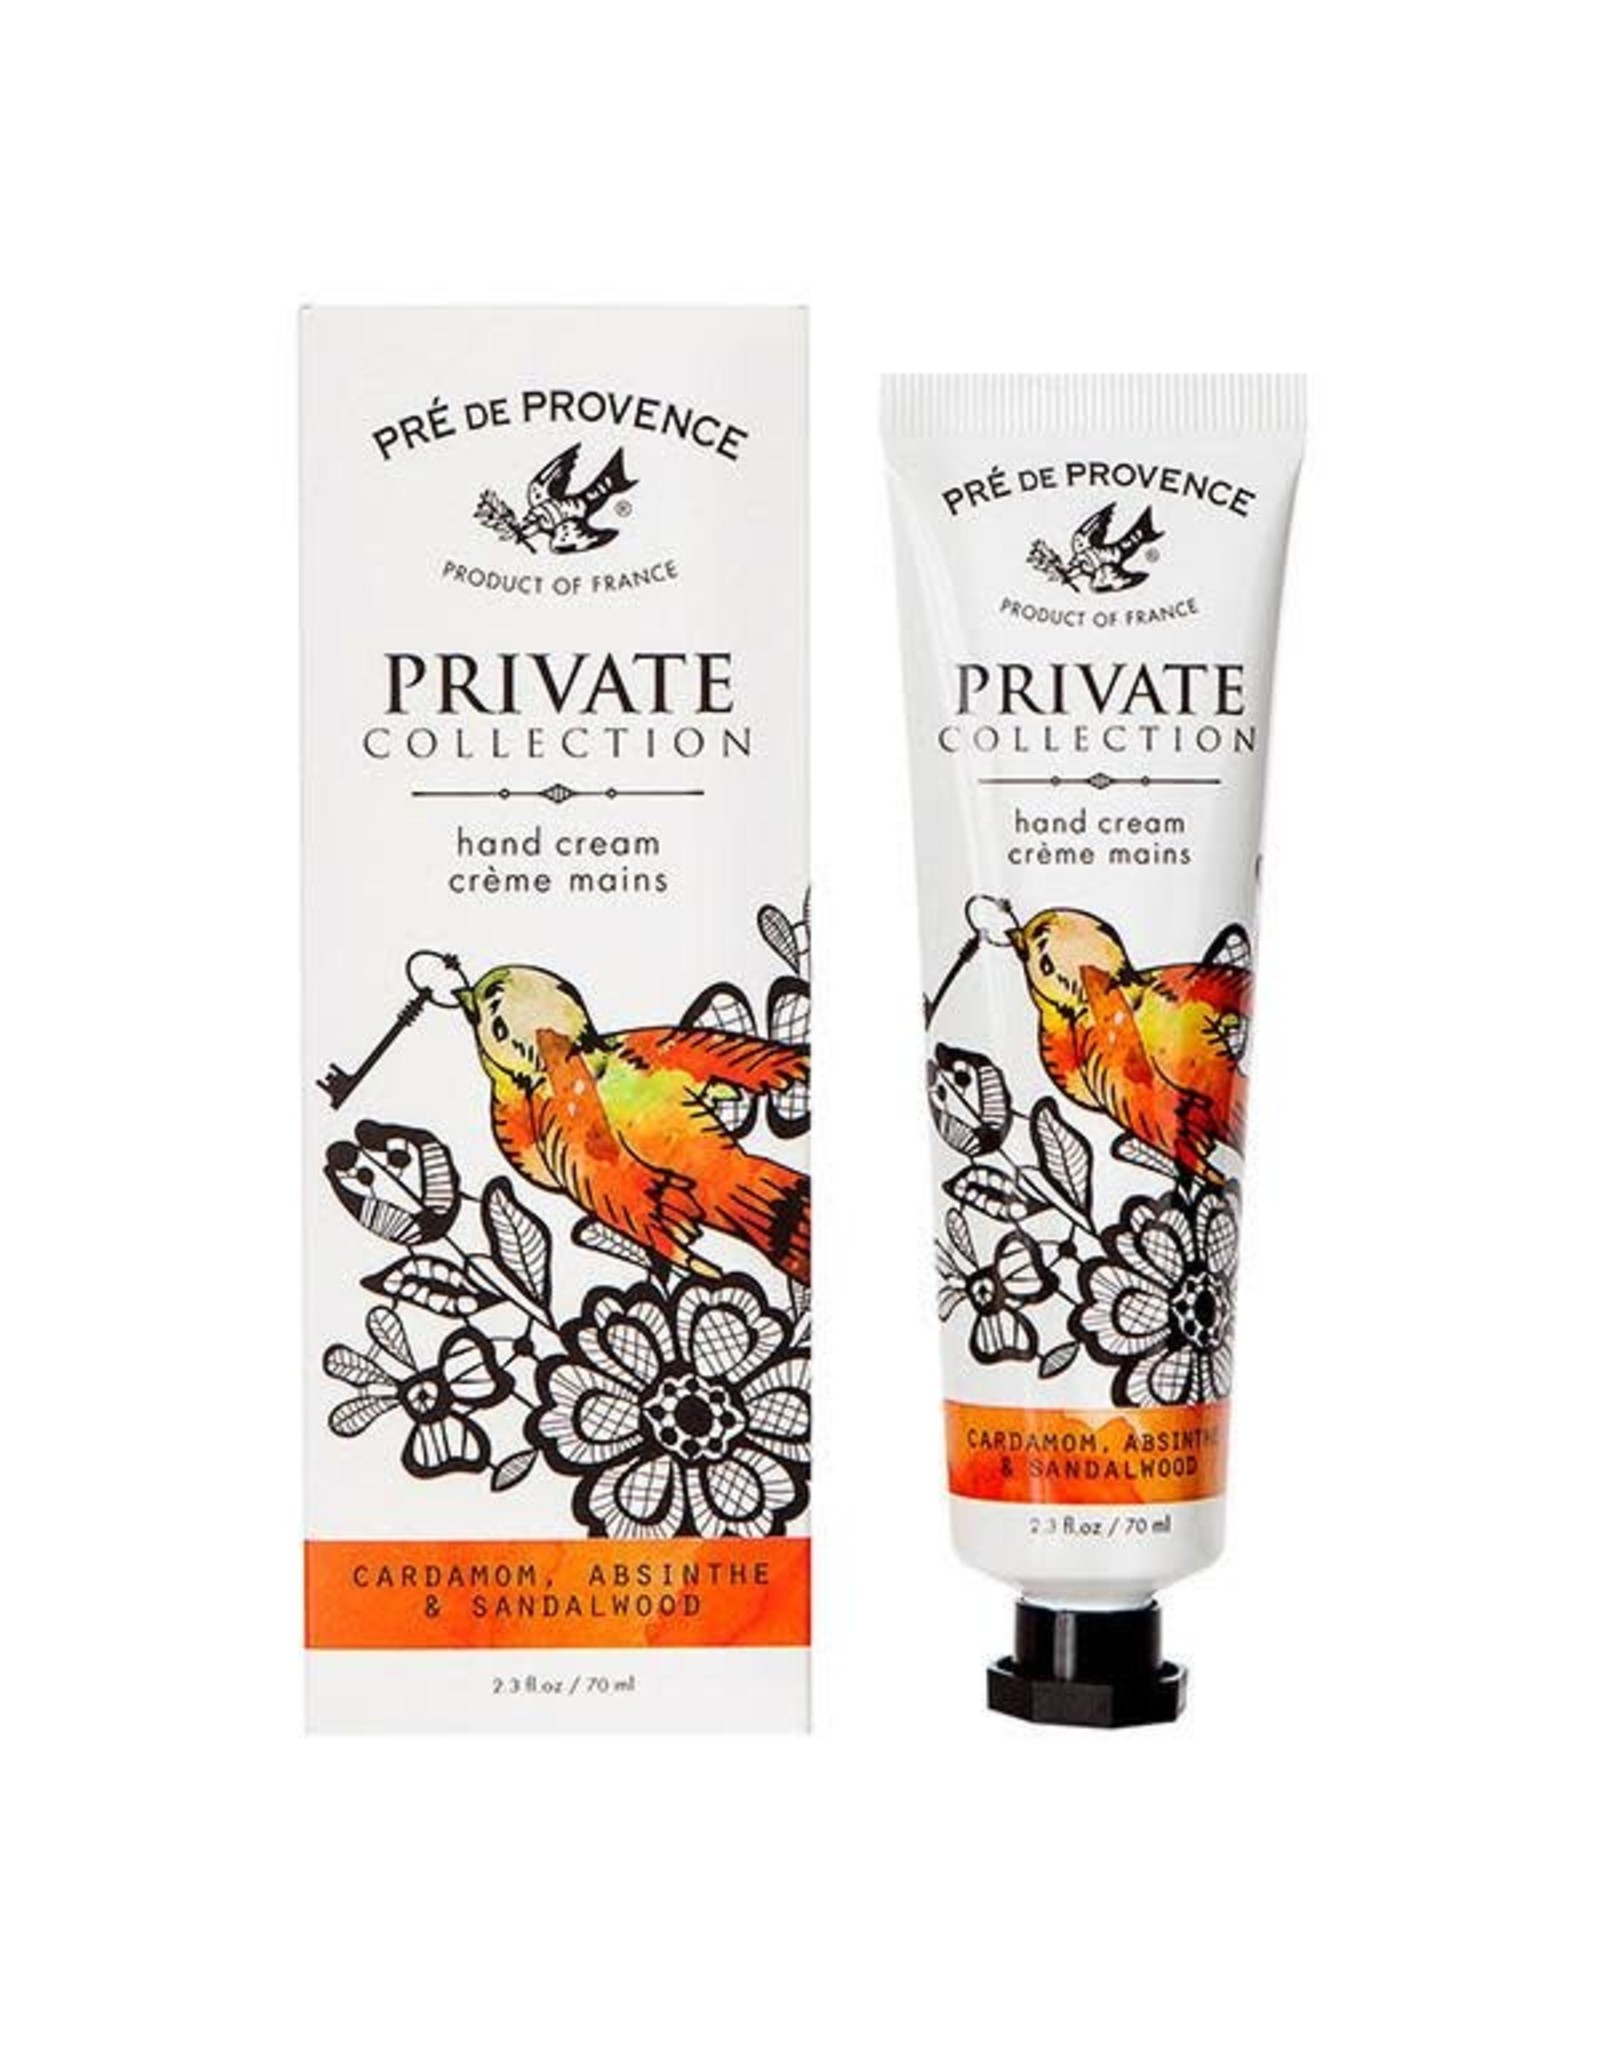 Pre de Provence Private Collection Hand Cream